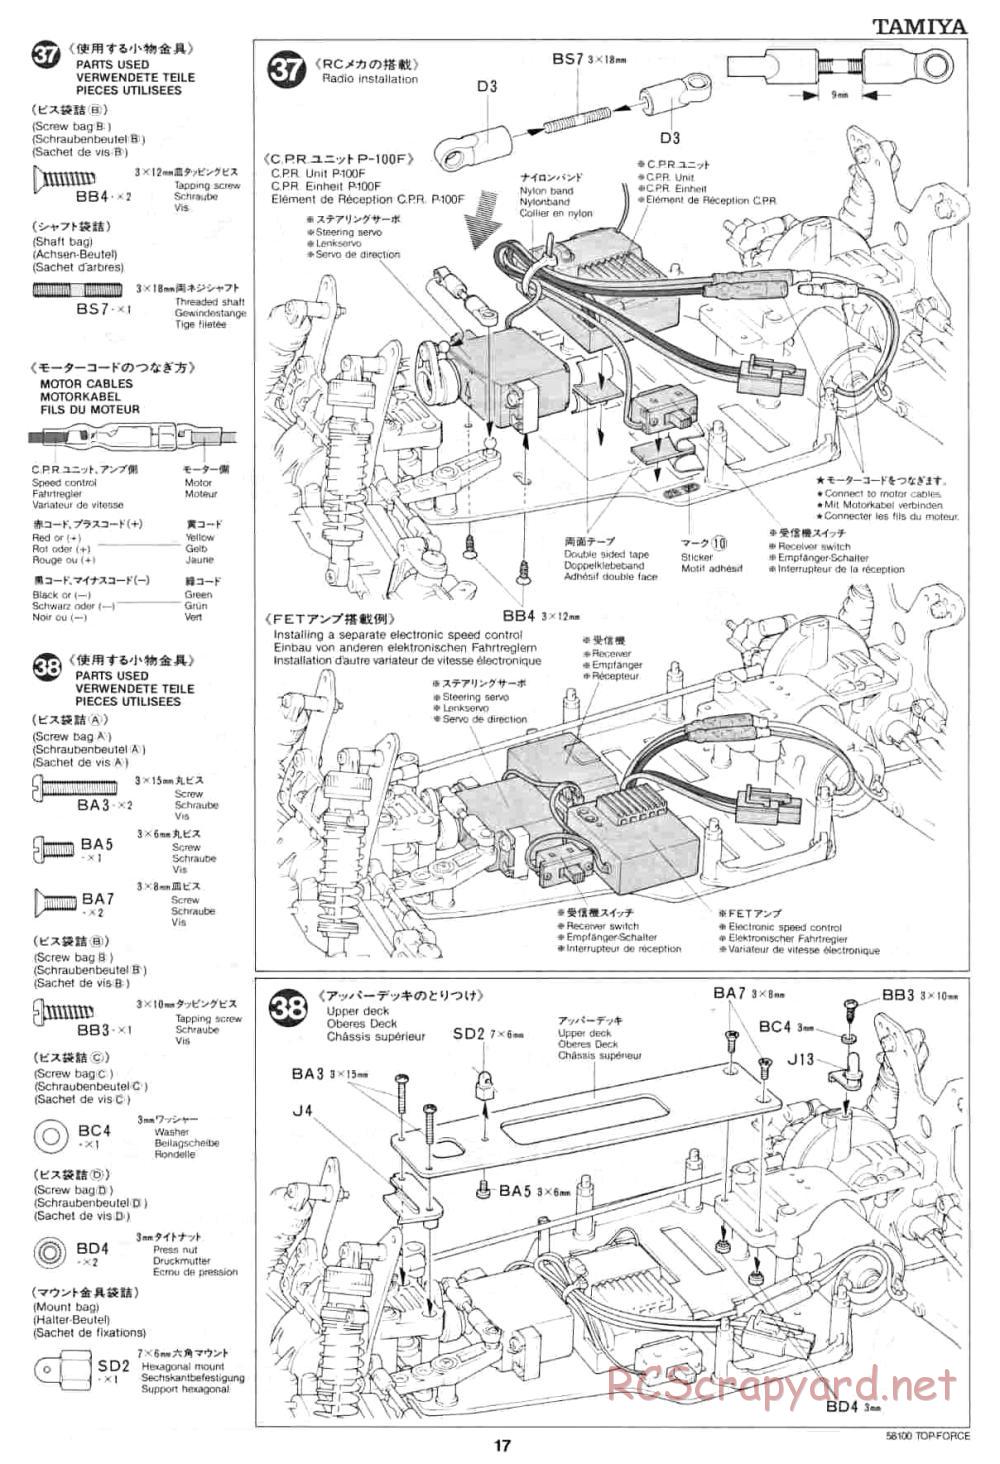 Tamiya - Top Force - 58100 - Manual - Page 17